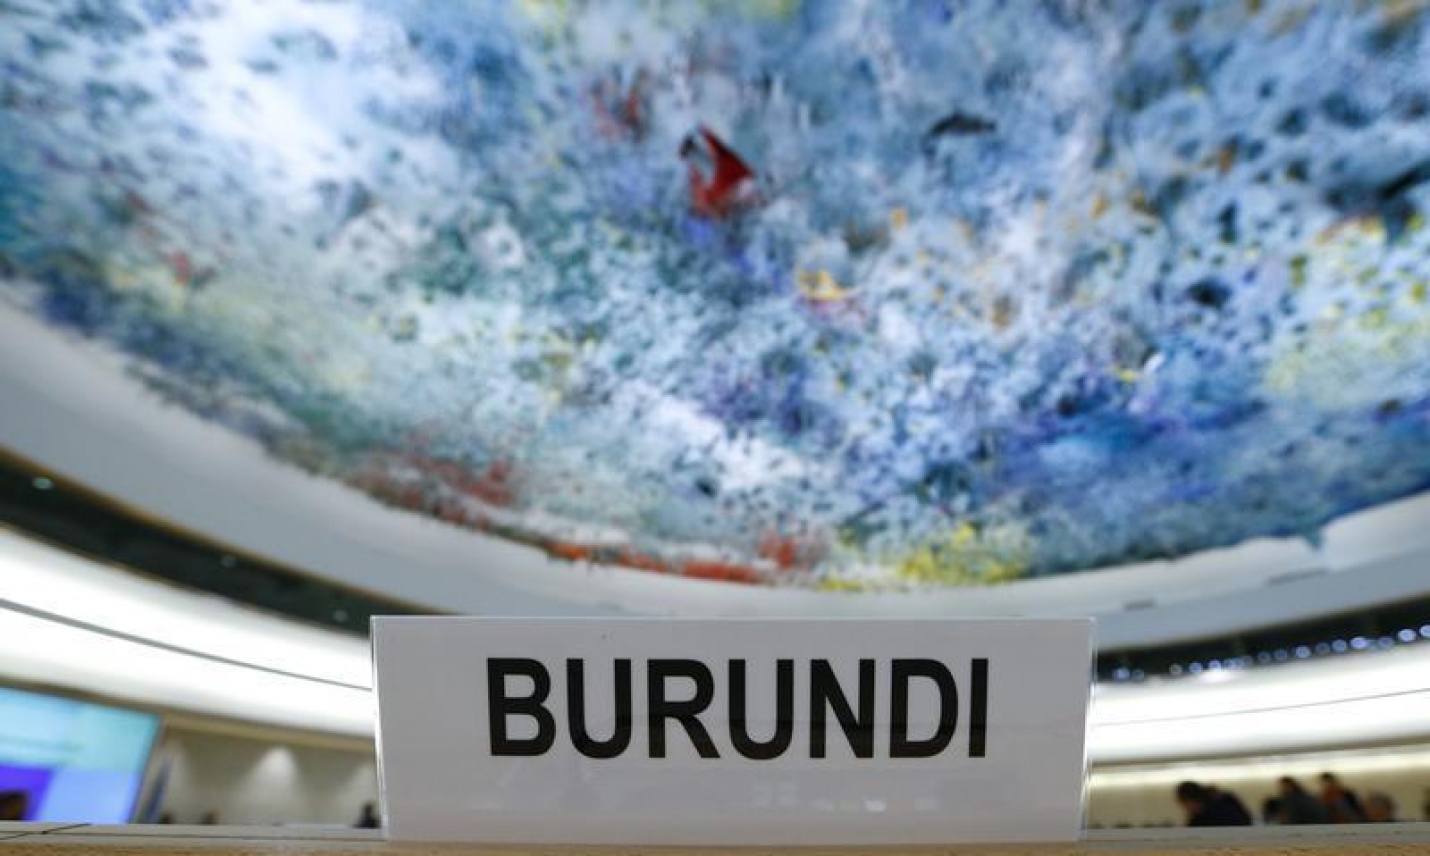 Burundi : Plus de 40 organisations demandent le renouvellement du mandat de la Commission d’enquête sur le Burundi